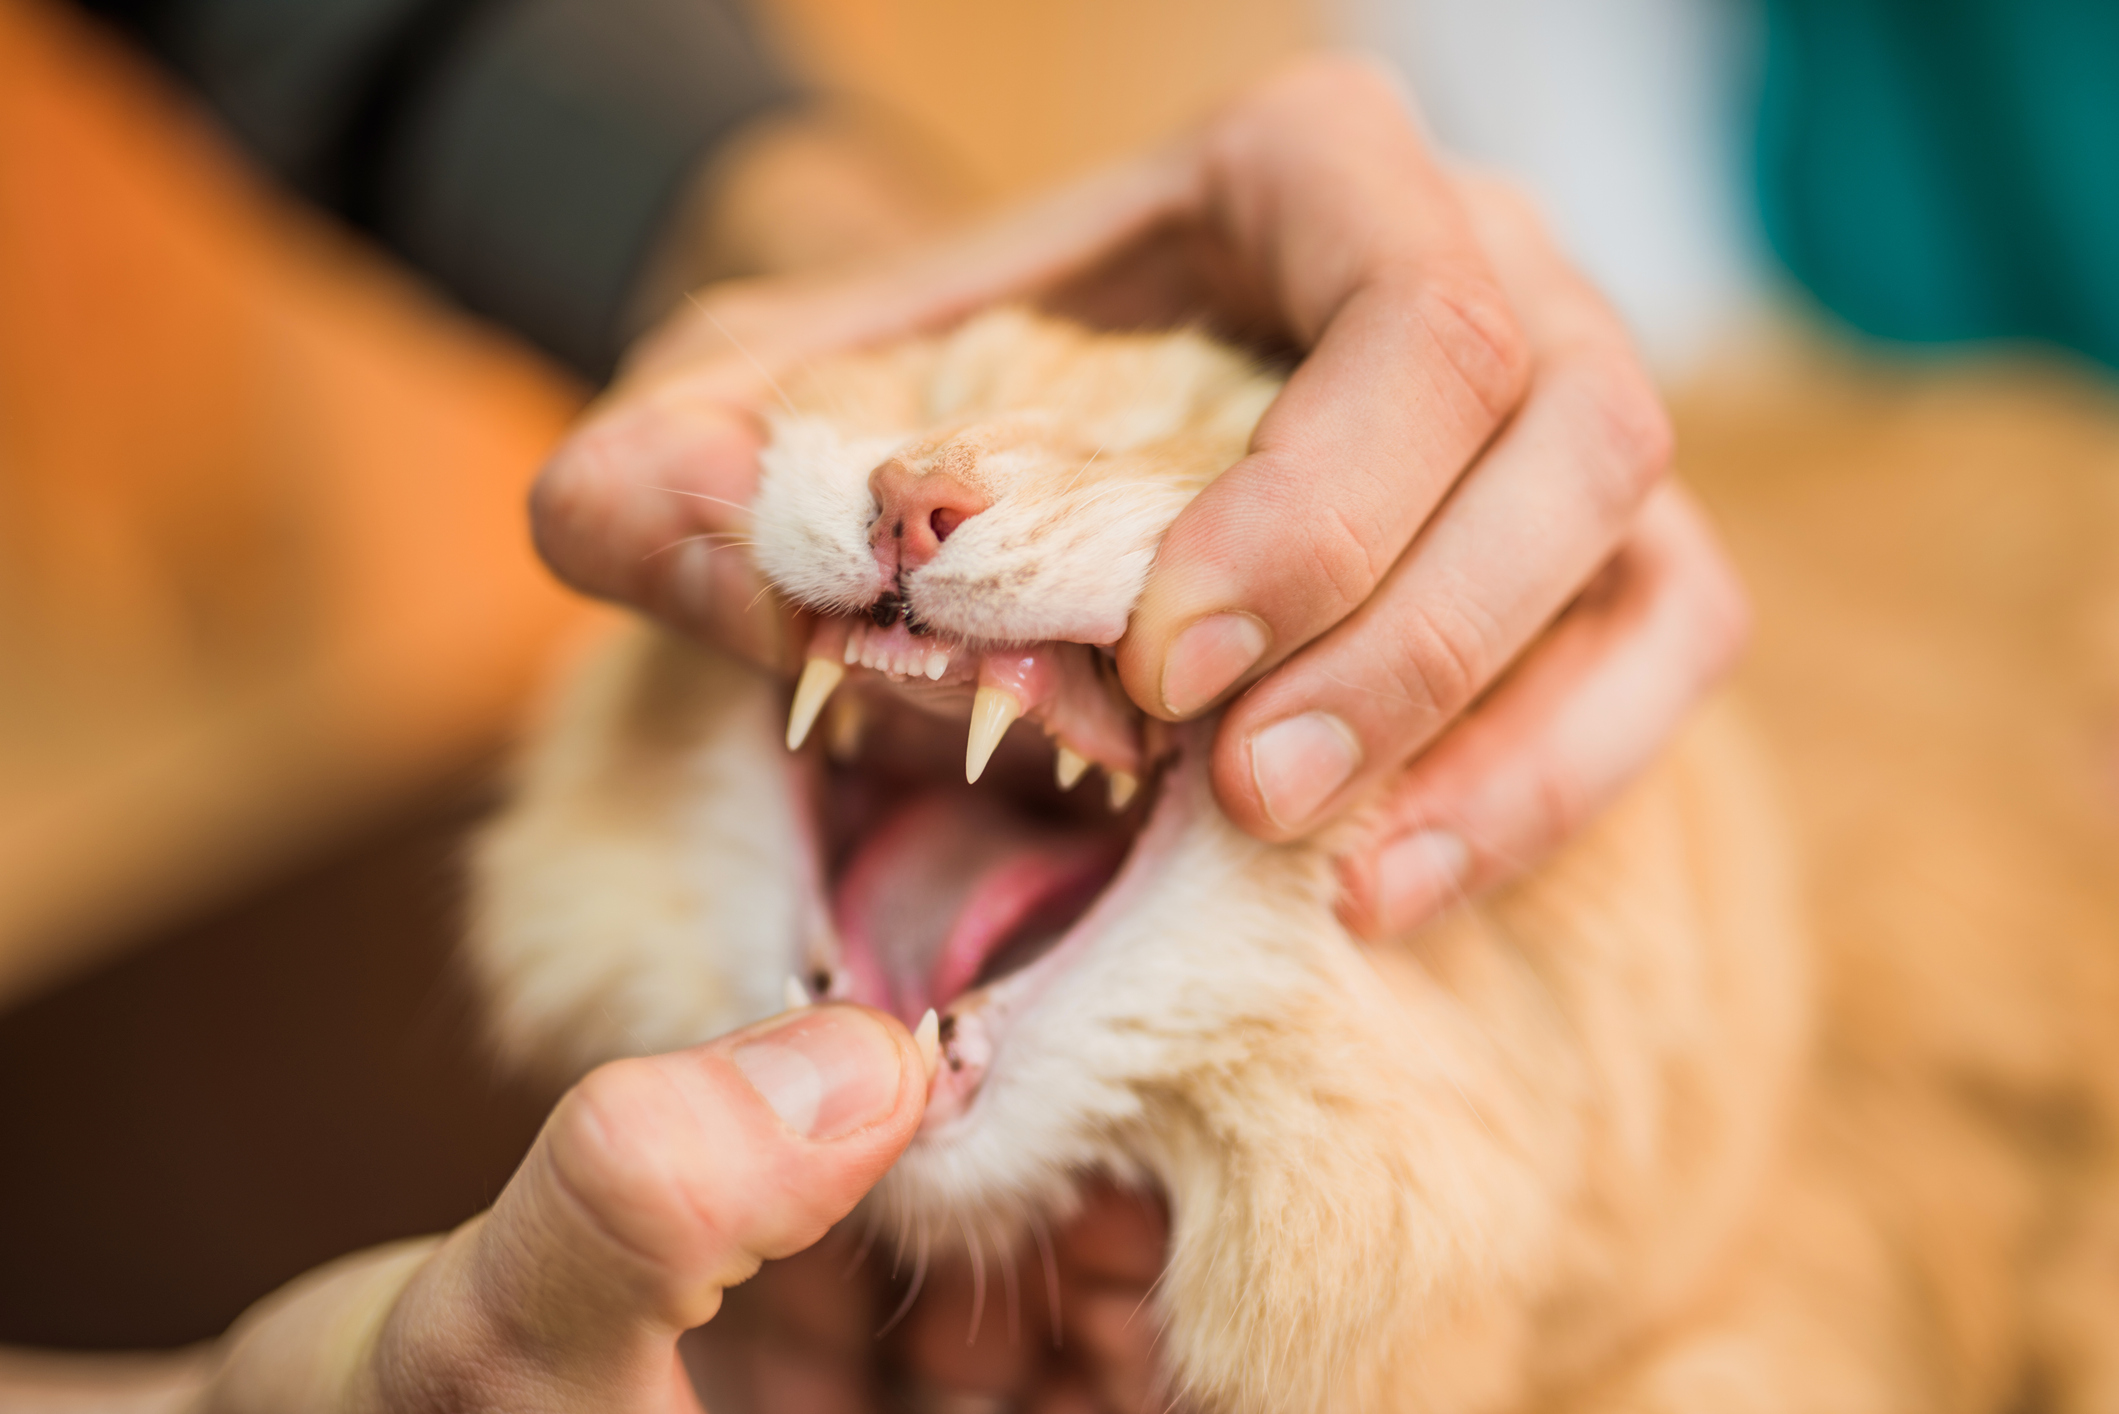 A veterinarian checks an orange cat's teeth